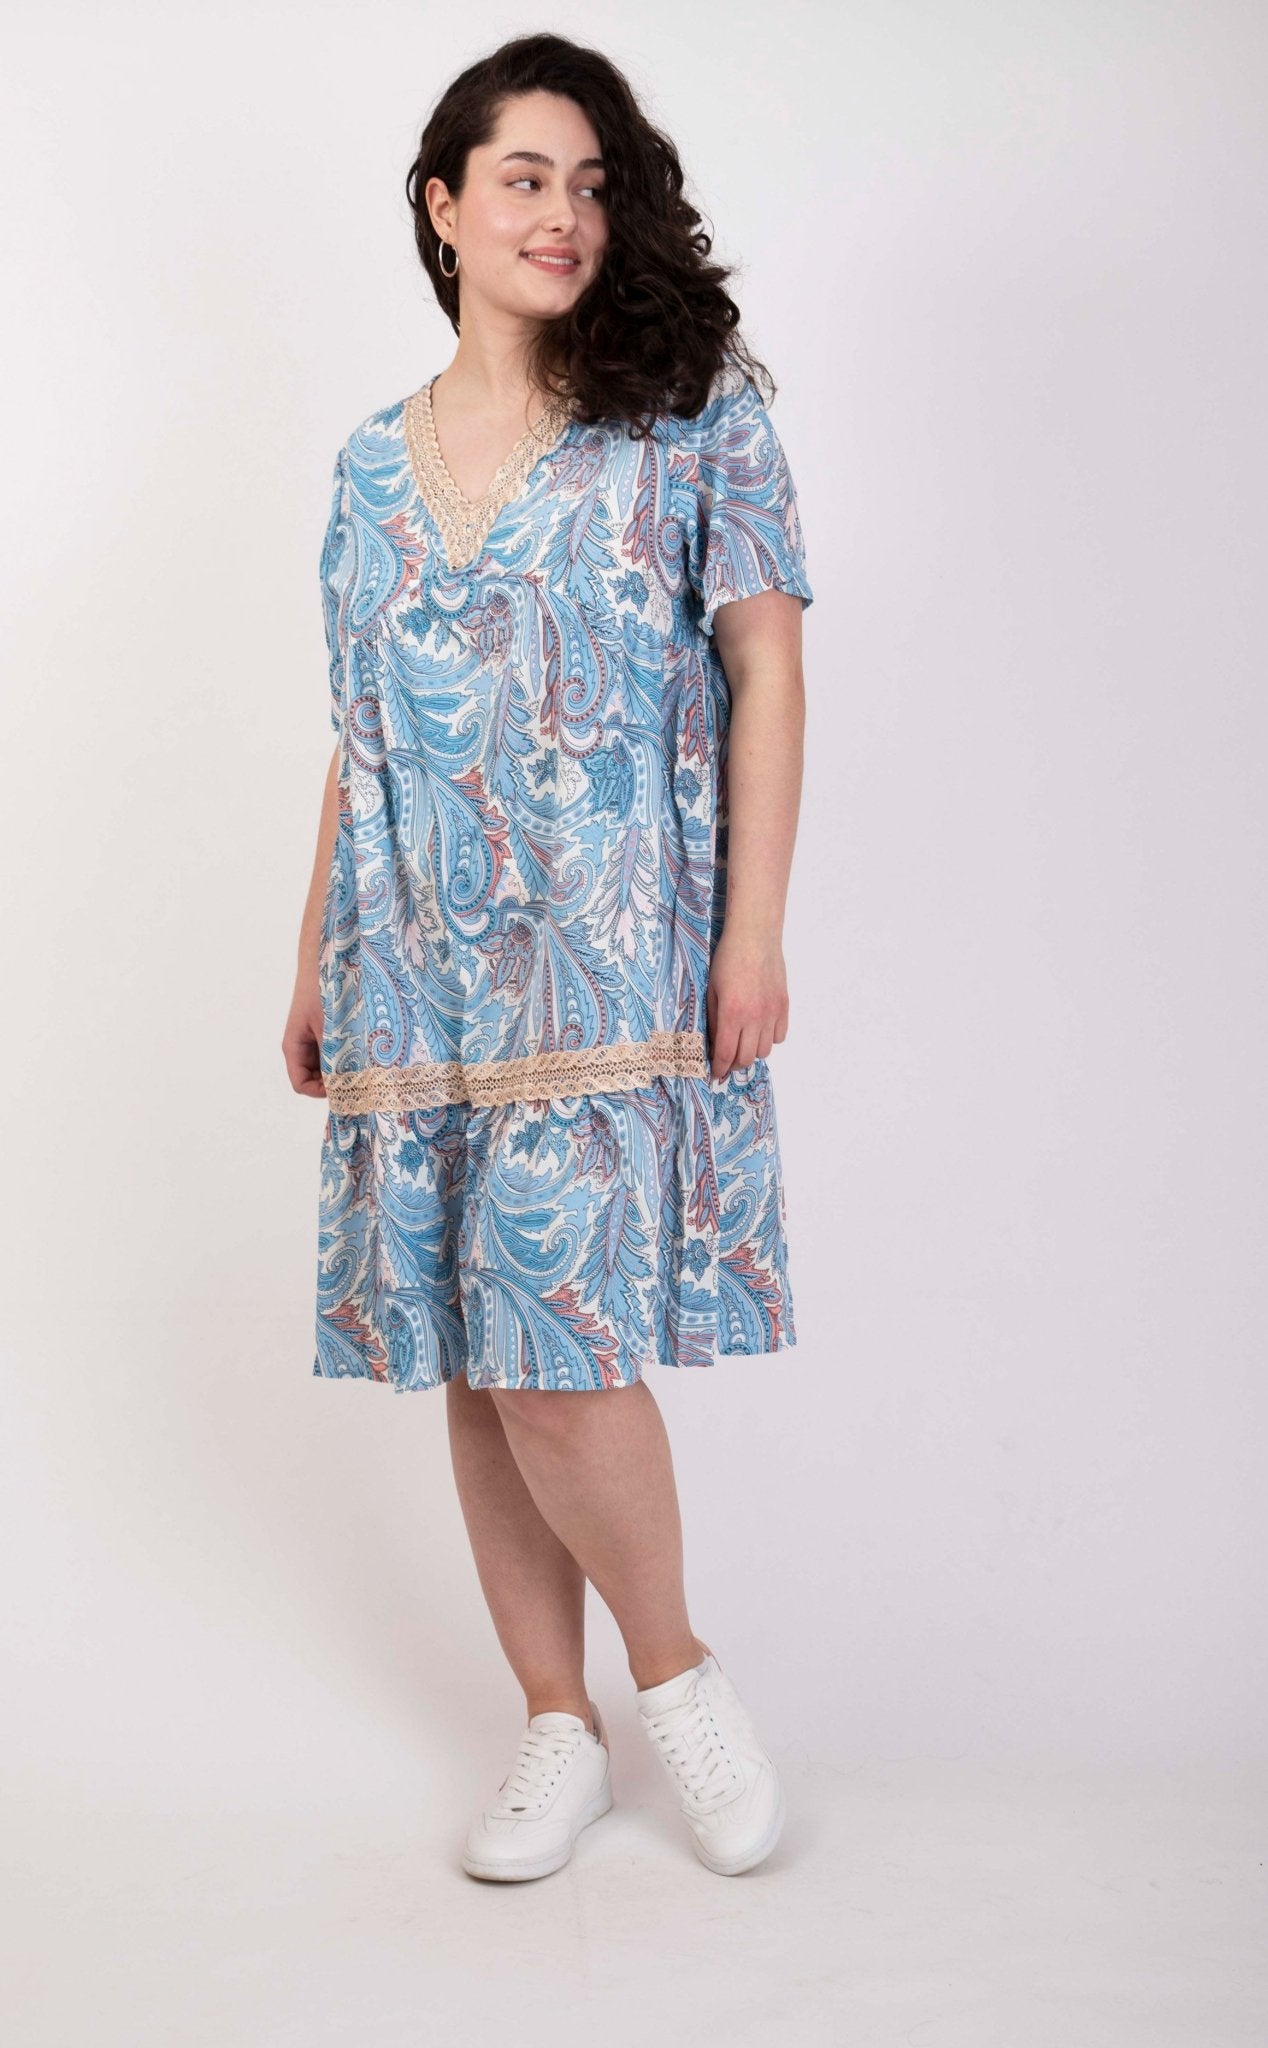 Kopie von Unwiderstehlich charmant: Kurzes Sommerkleid mit verspieltem Blumendruck - incurvy